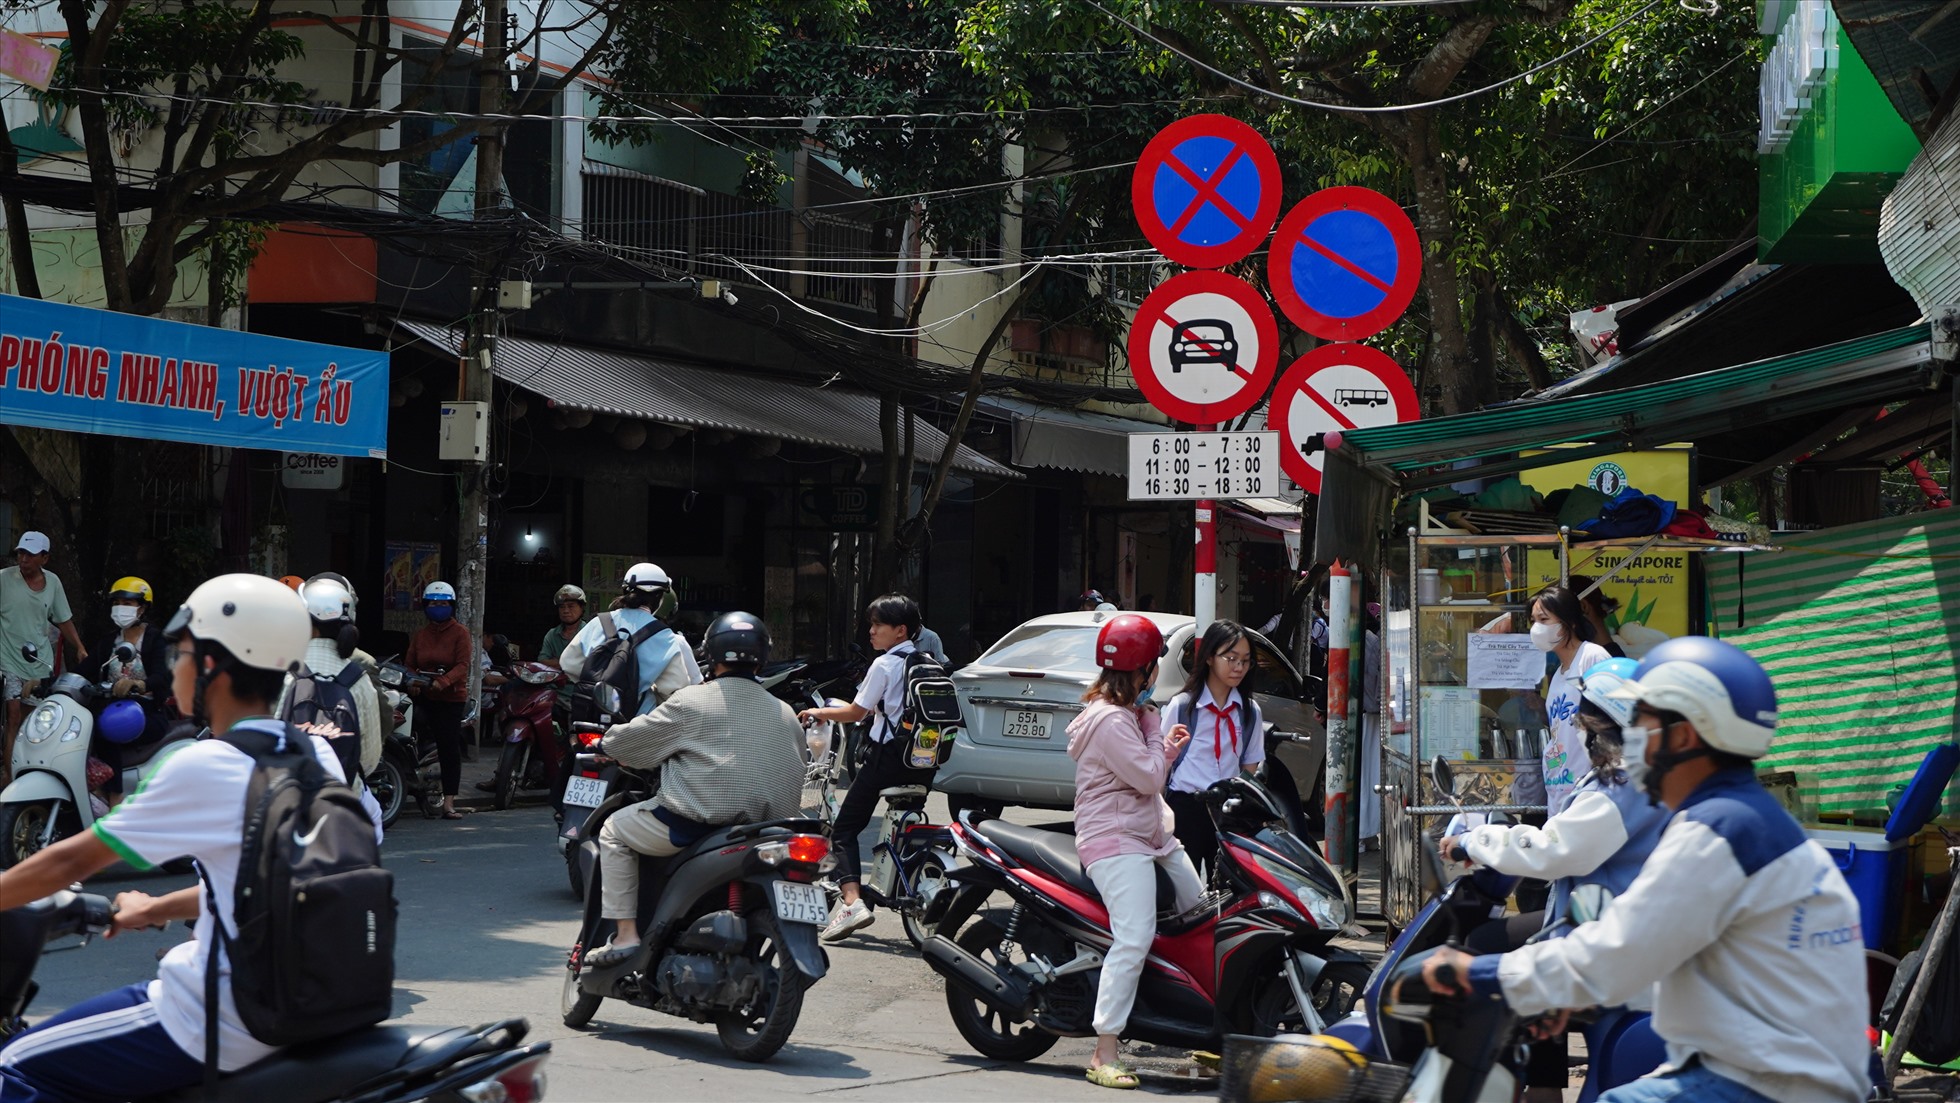 Anh Nguyễn Văn Chung ( 46 tuổi, quận Cái Răng) cho biết, tình trạng ô tô đi vào giờ giờ đường cấm (giờ đón con) diễn ra thường xuyên dẫn đến gây ùn tắc cục bộ. Khi có lực lượng chức năng thì vẫn có ít, nhưng không có là ra vào liên tục.